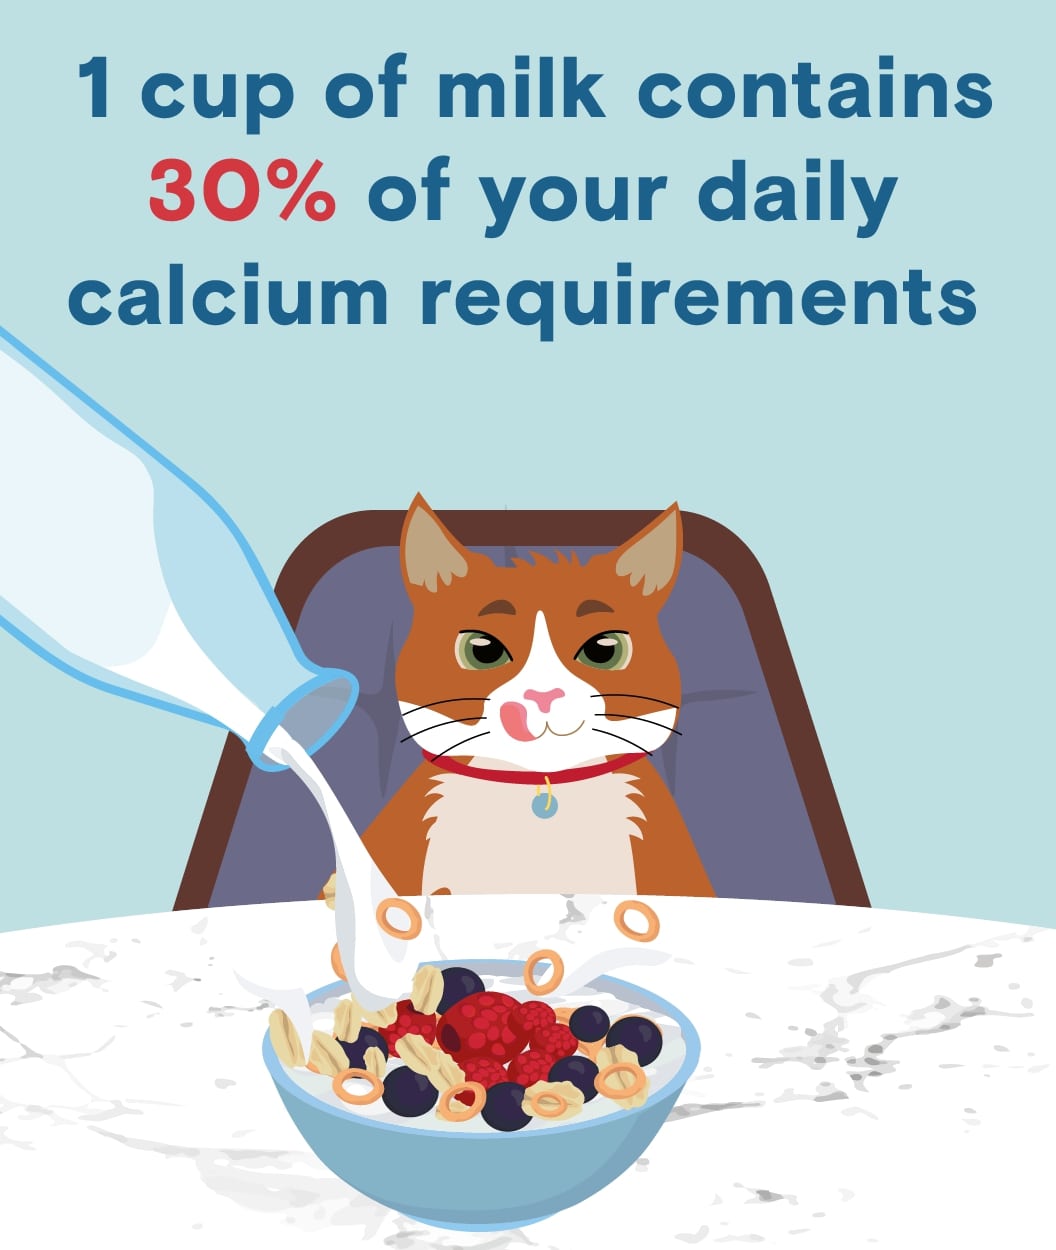 milk nutrition facts: calcium content